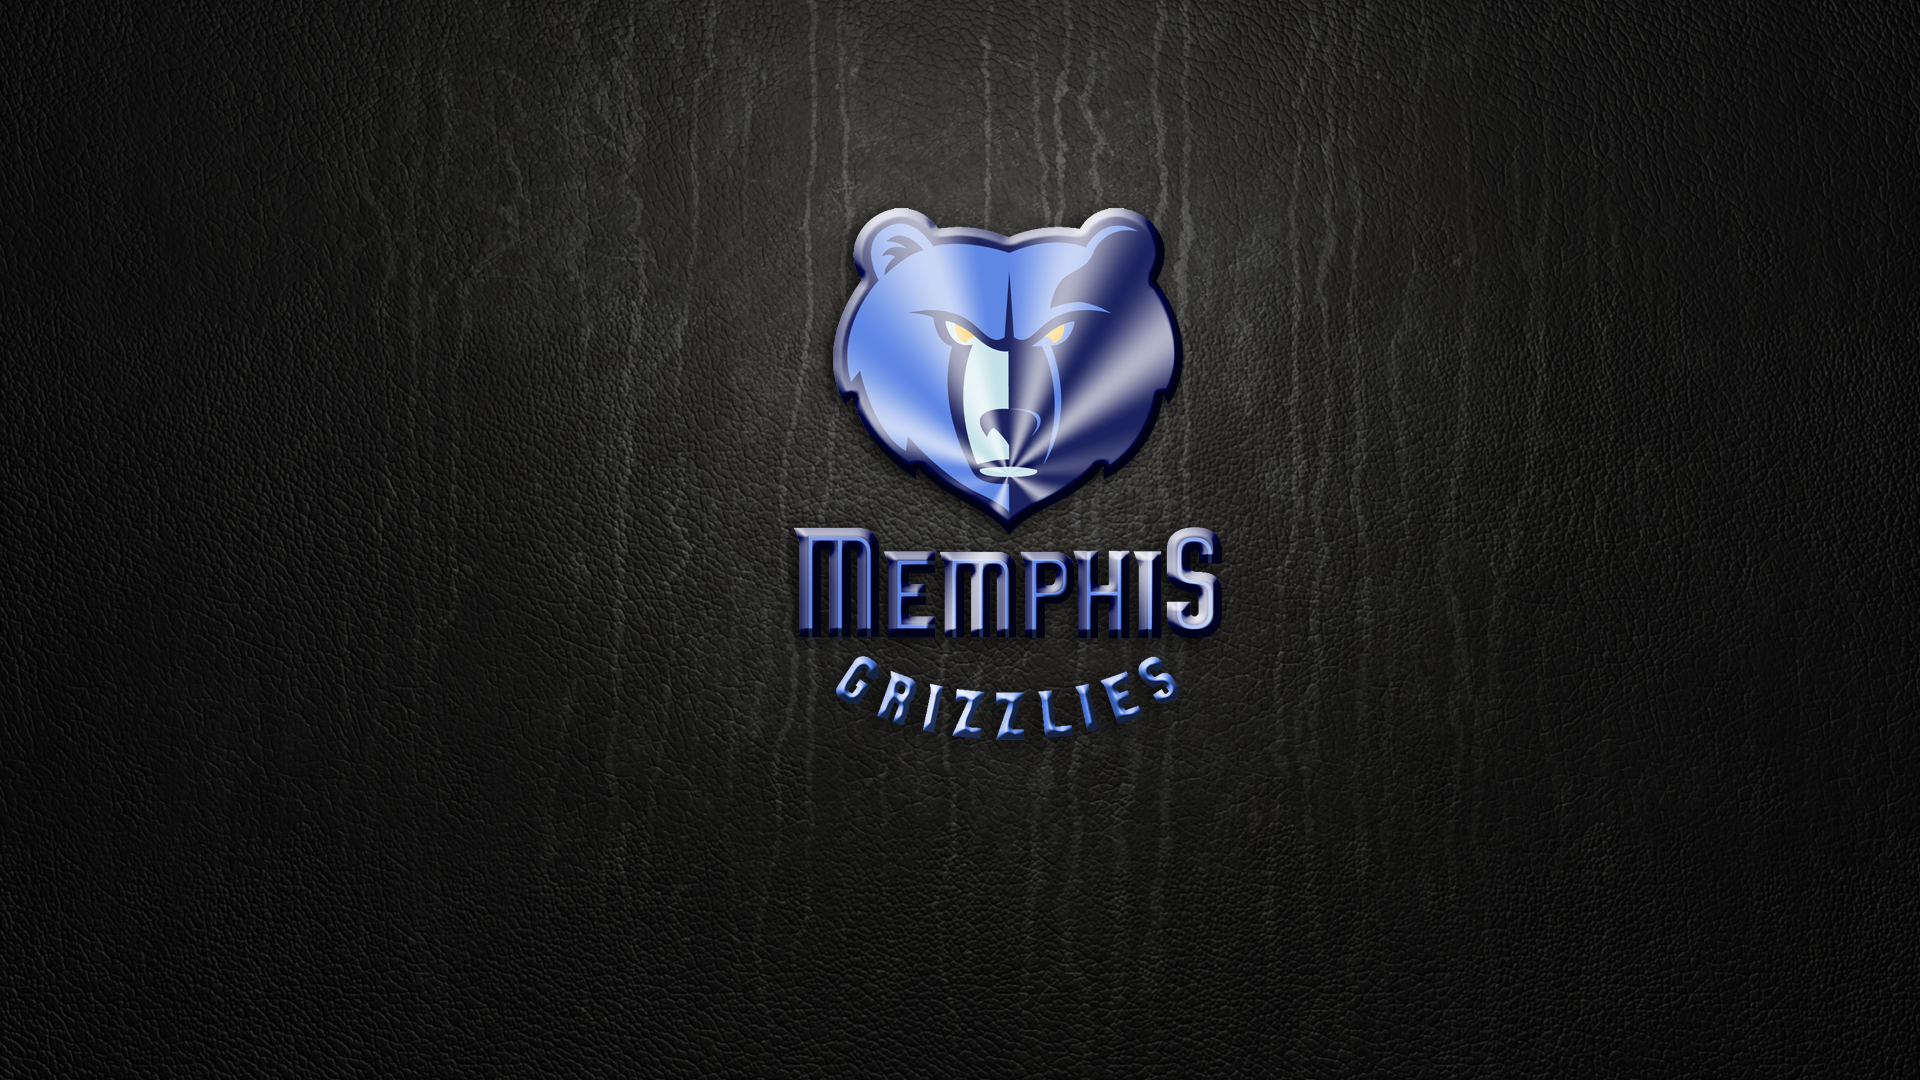 200+] Memphis Grizzlies Wallpapers